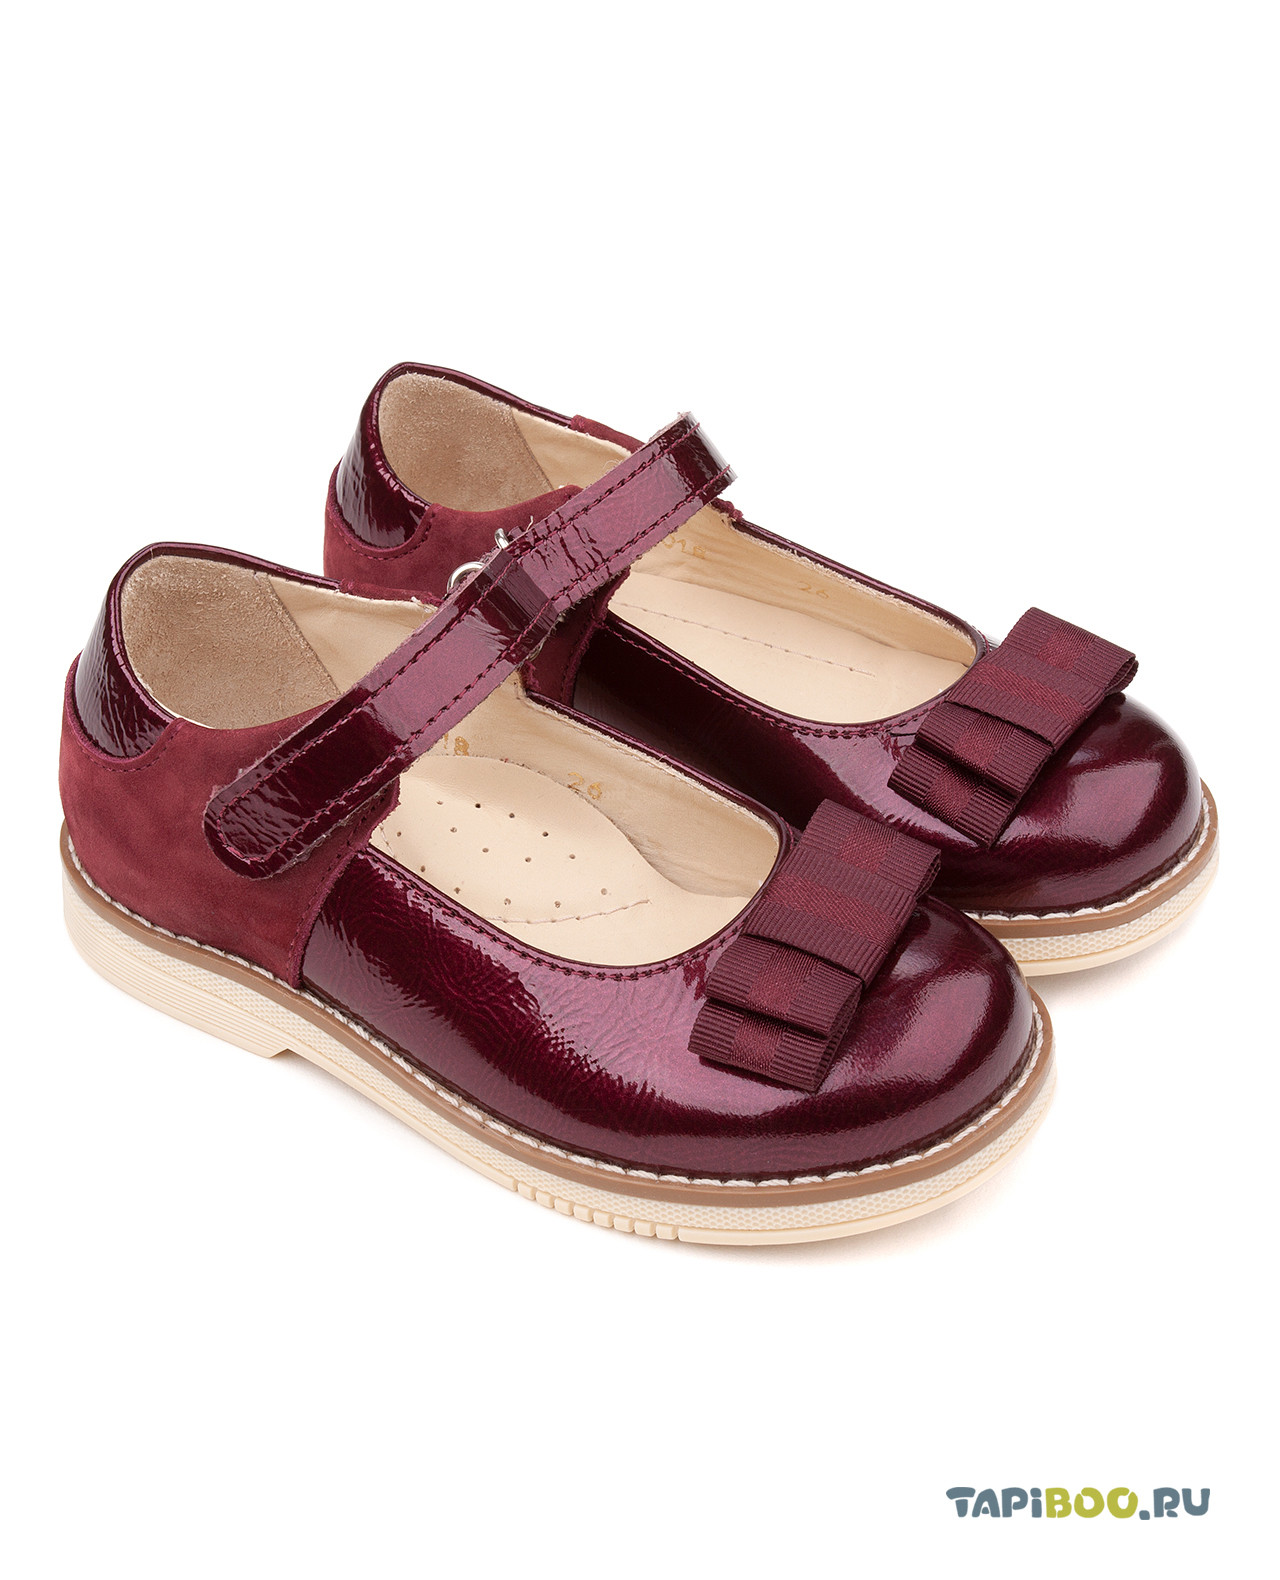 Туфли детские Tapiboo МАК (80184, 32) сандалии детские tapiboo мак тюльпаны 71345 32